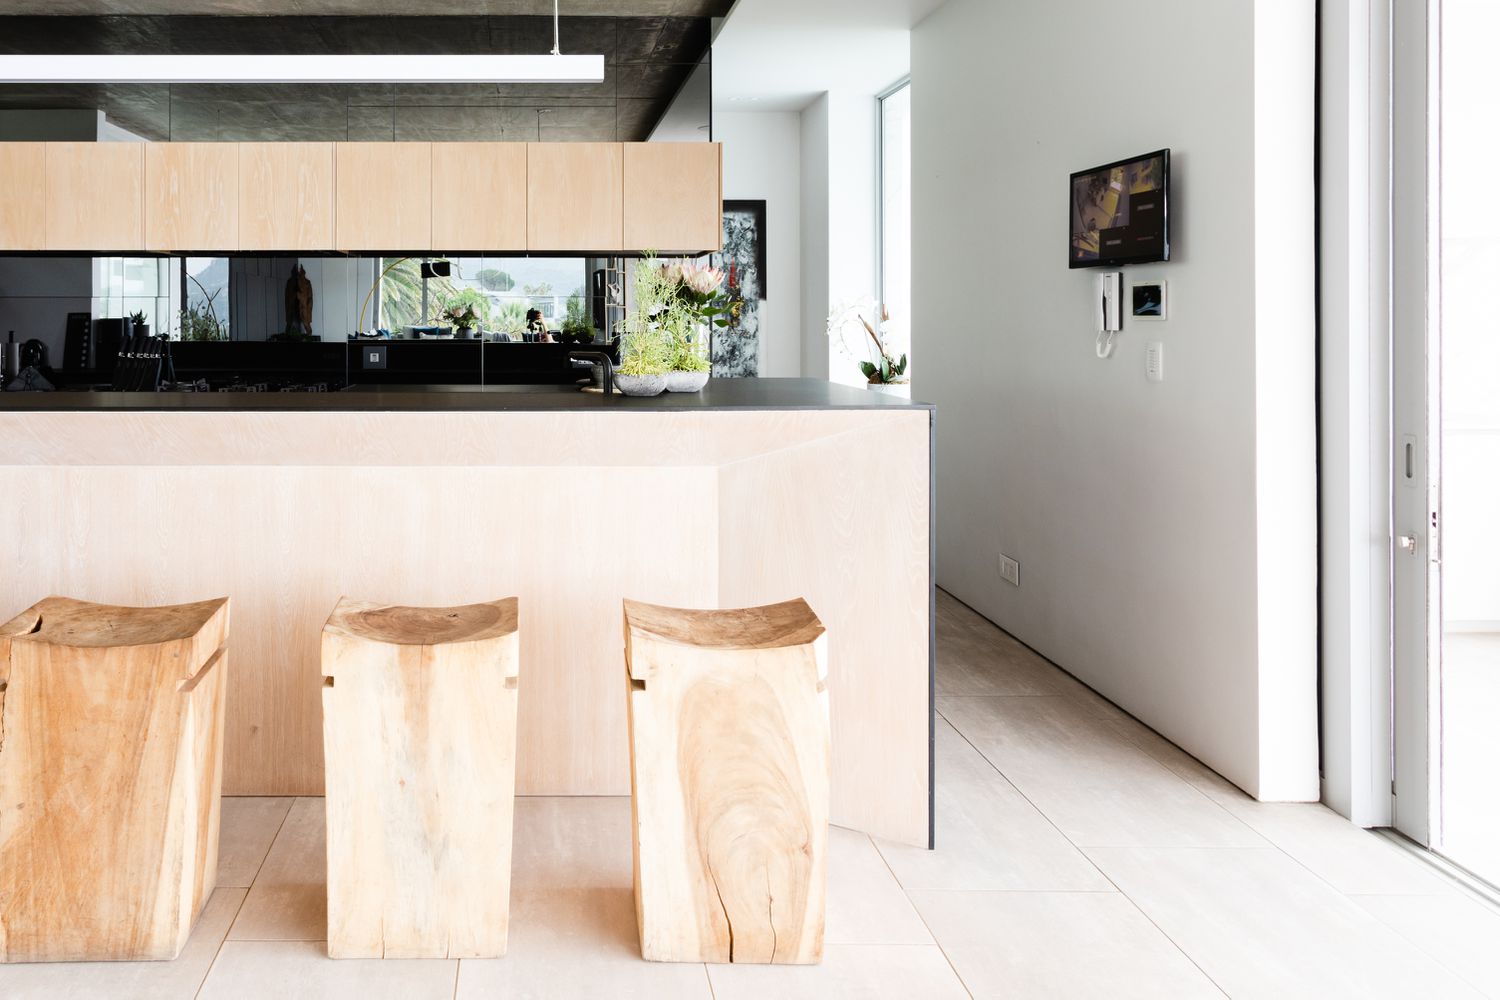 ilha de cozinha minimalista com luz natural abundante